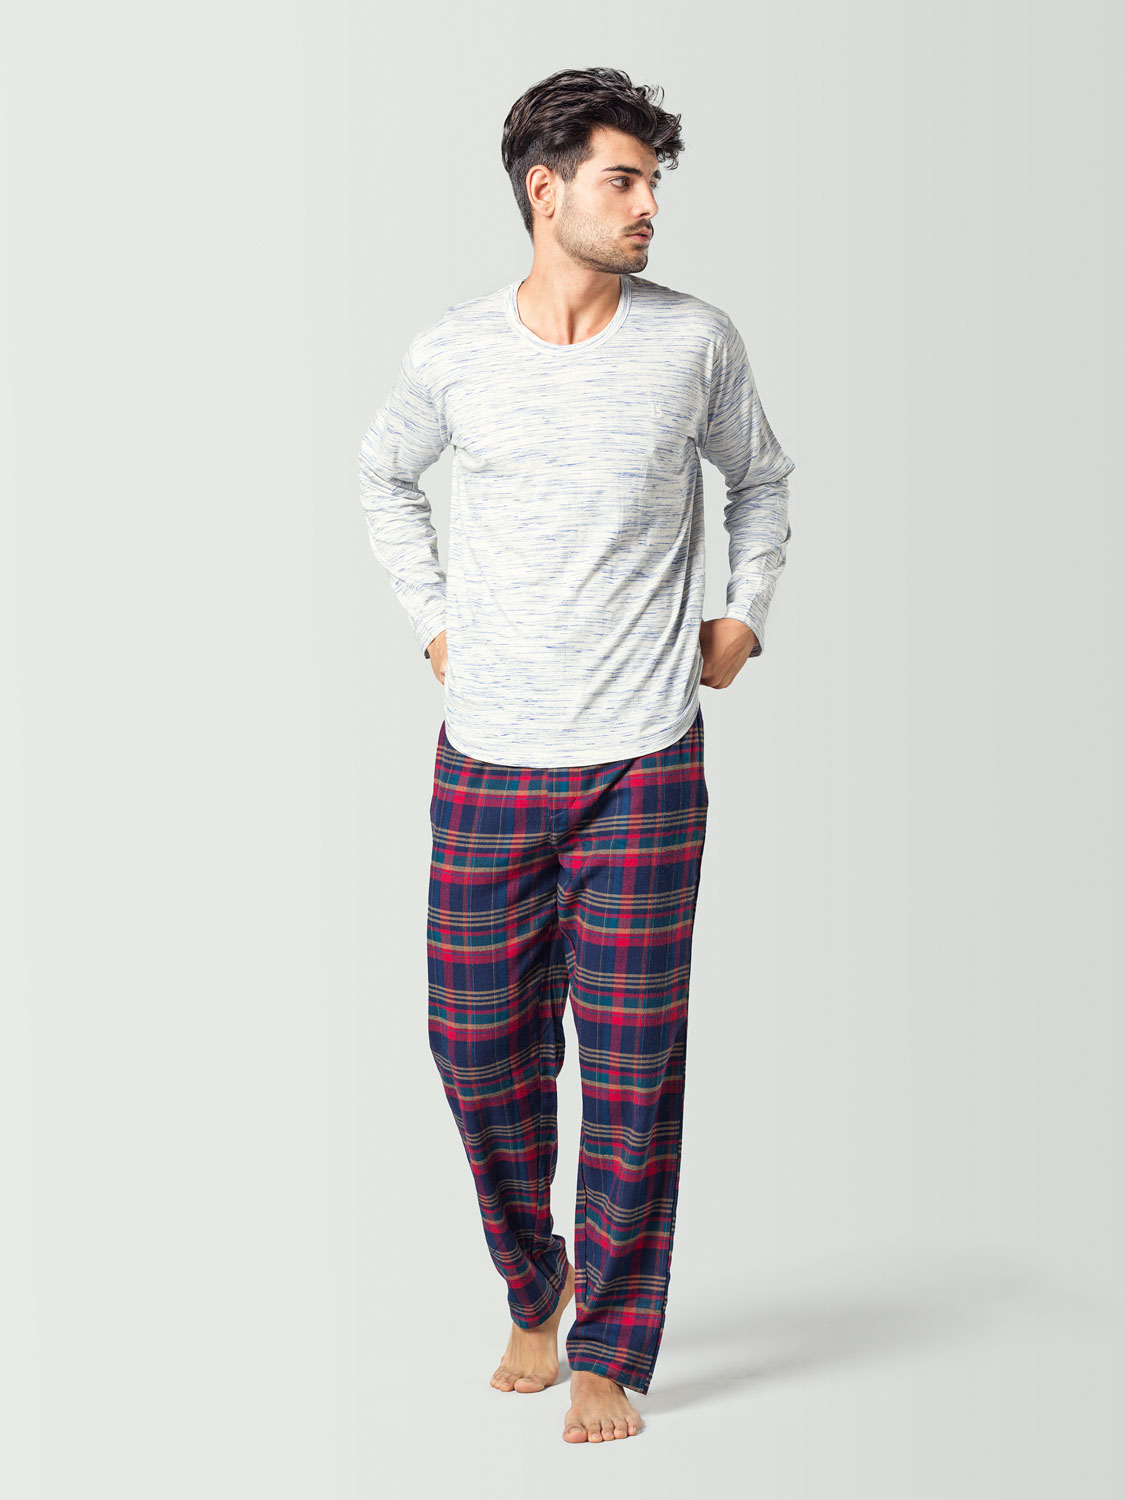 Pijama para hombre con camiseta de manga larga blanca y pantalón a cuadros azul y rojo